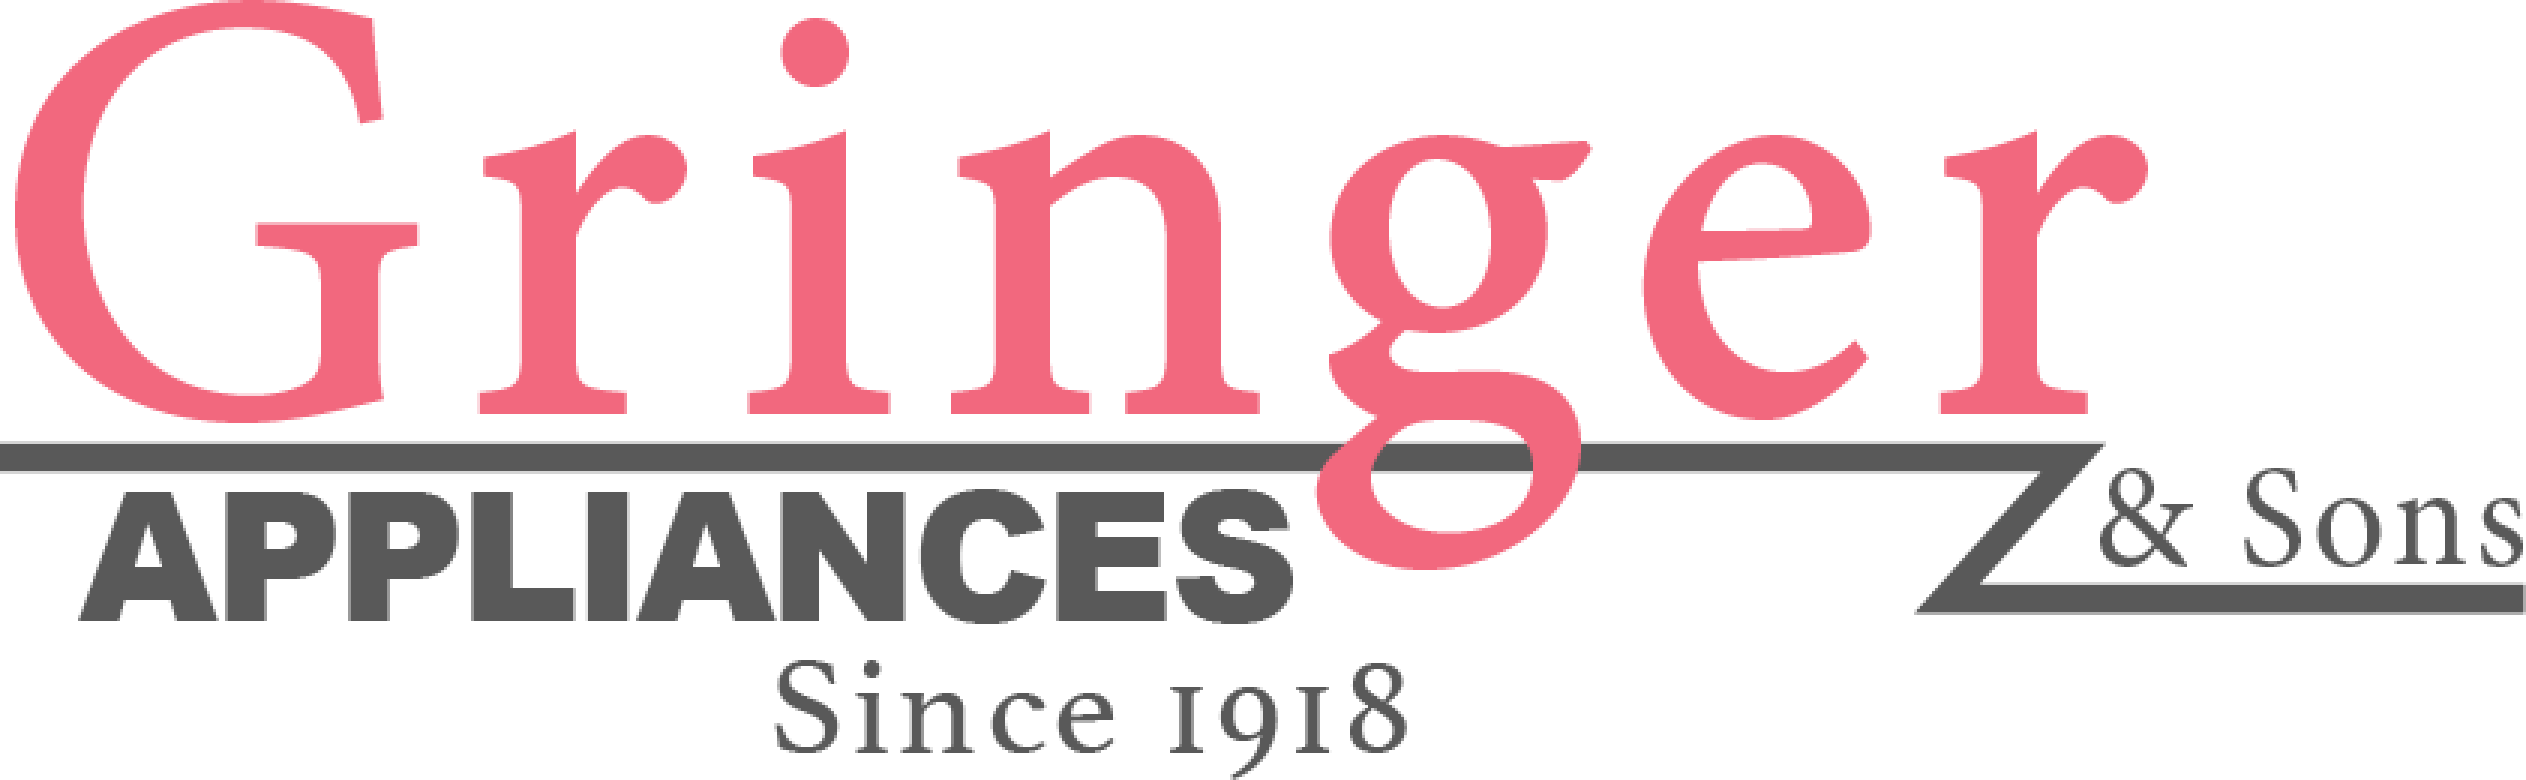 Gringer & Sons Appliances Since 1918